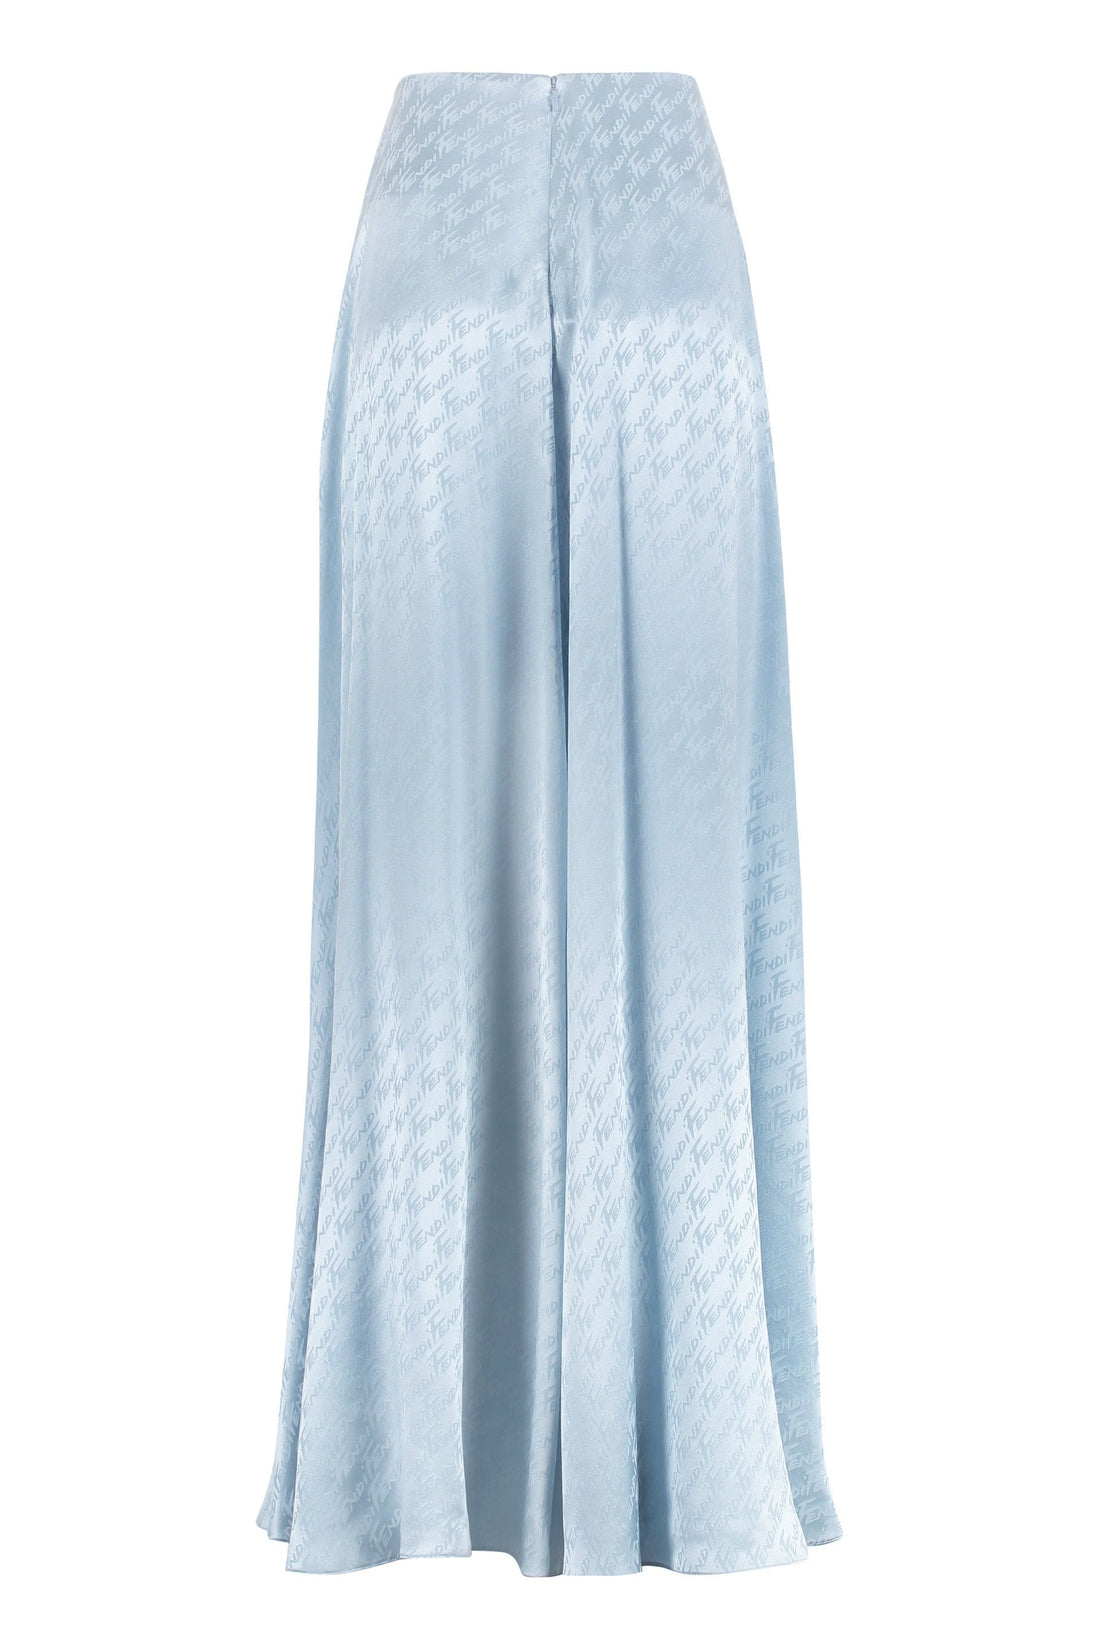 Fendi-OUTLET-SALE-Silk skirt pants-ARCHIVIST